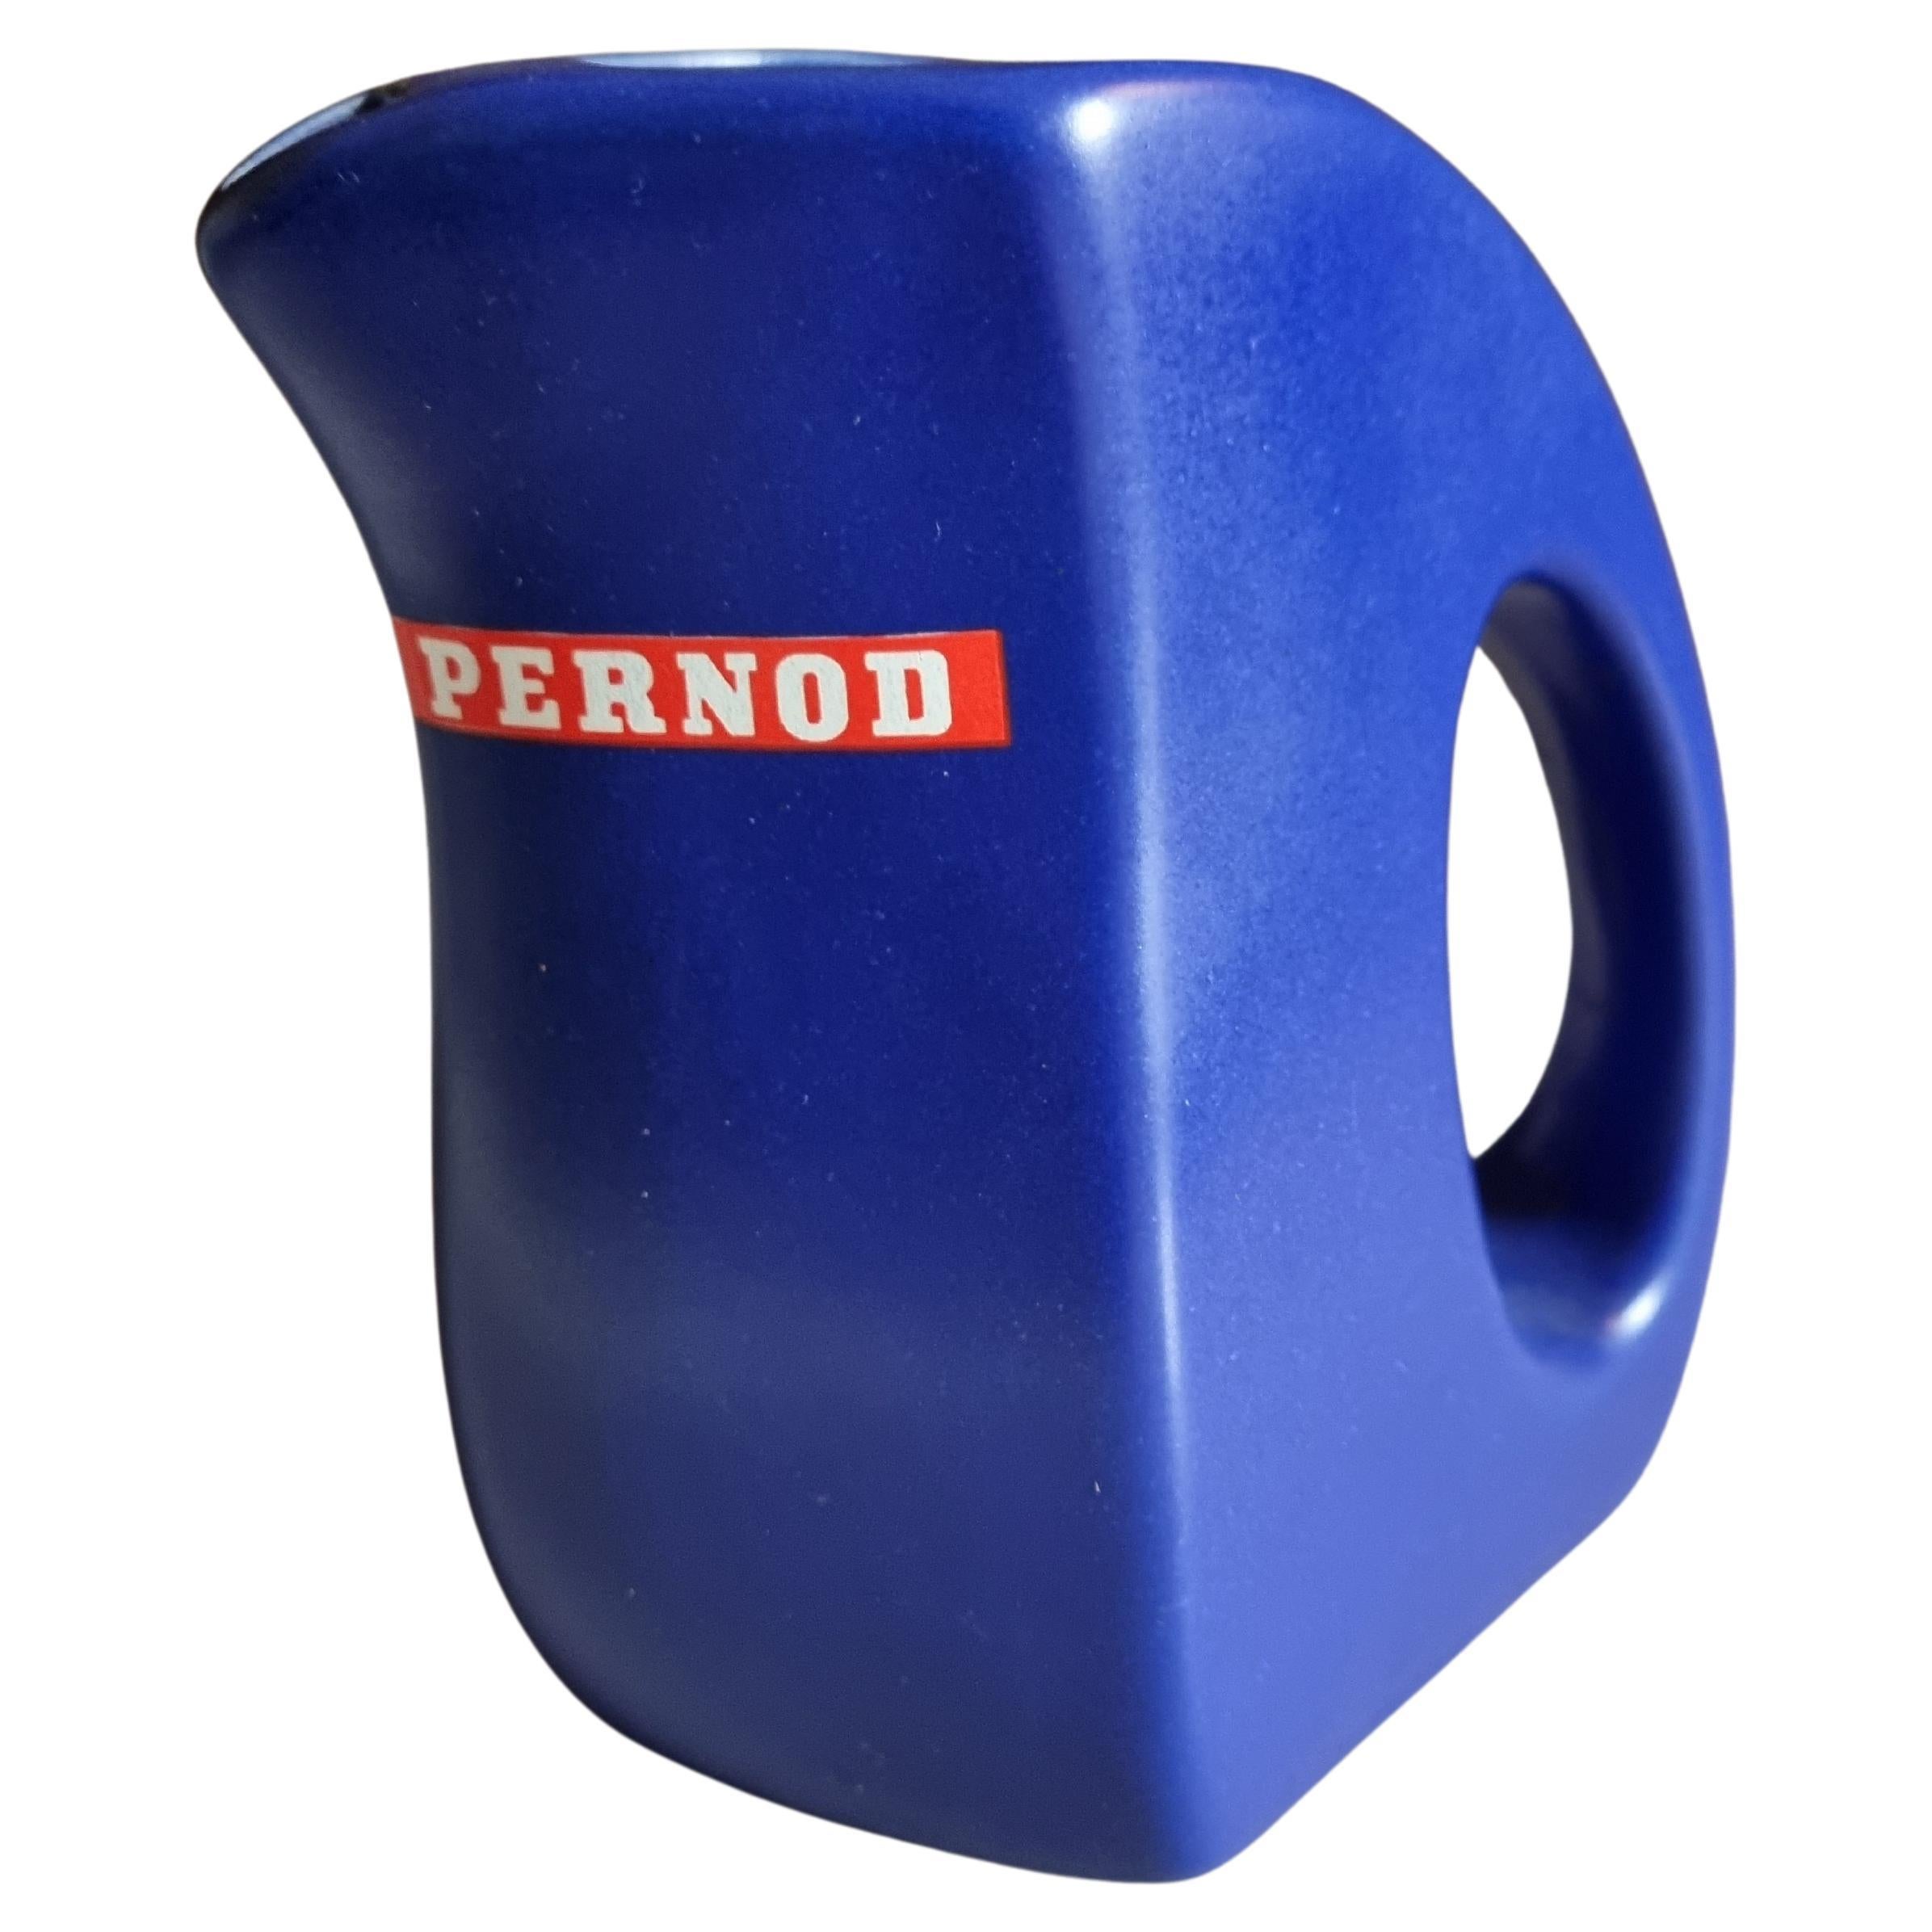 Pernod Wasserkrug in blau France 80ies For Sale